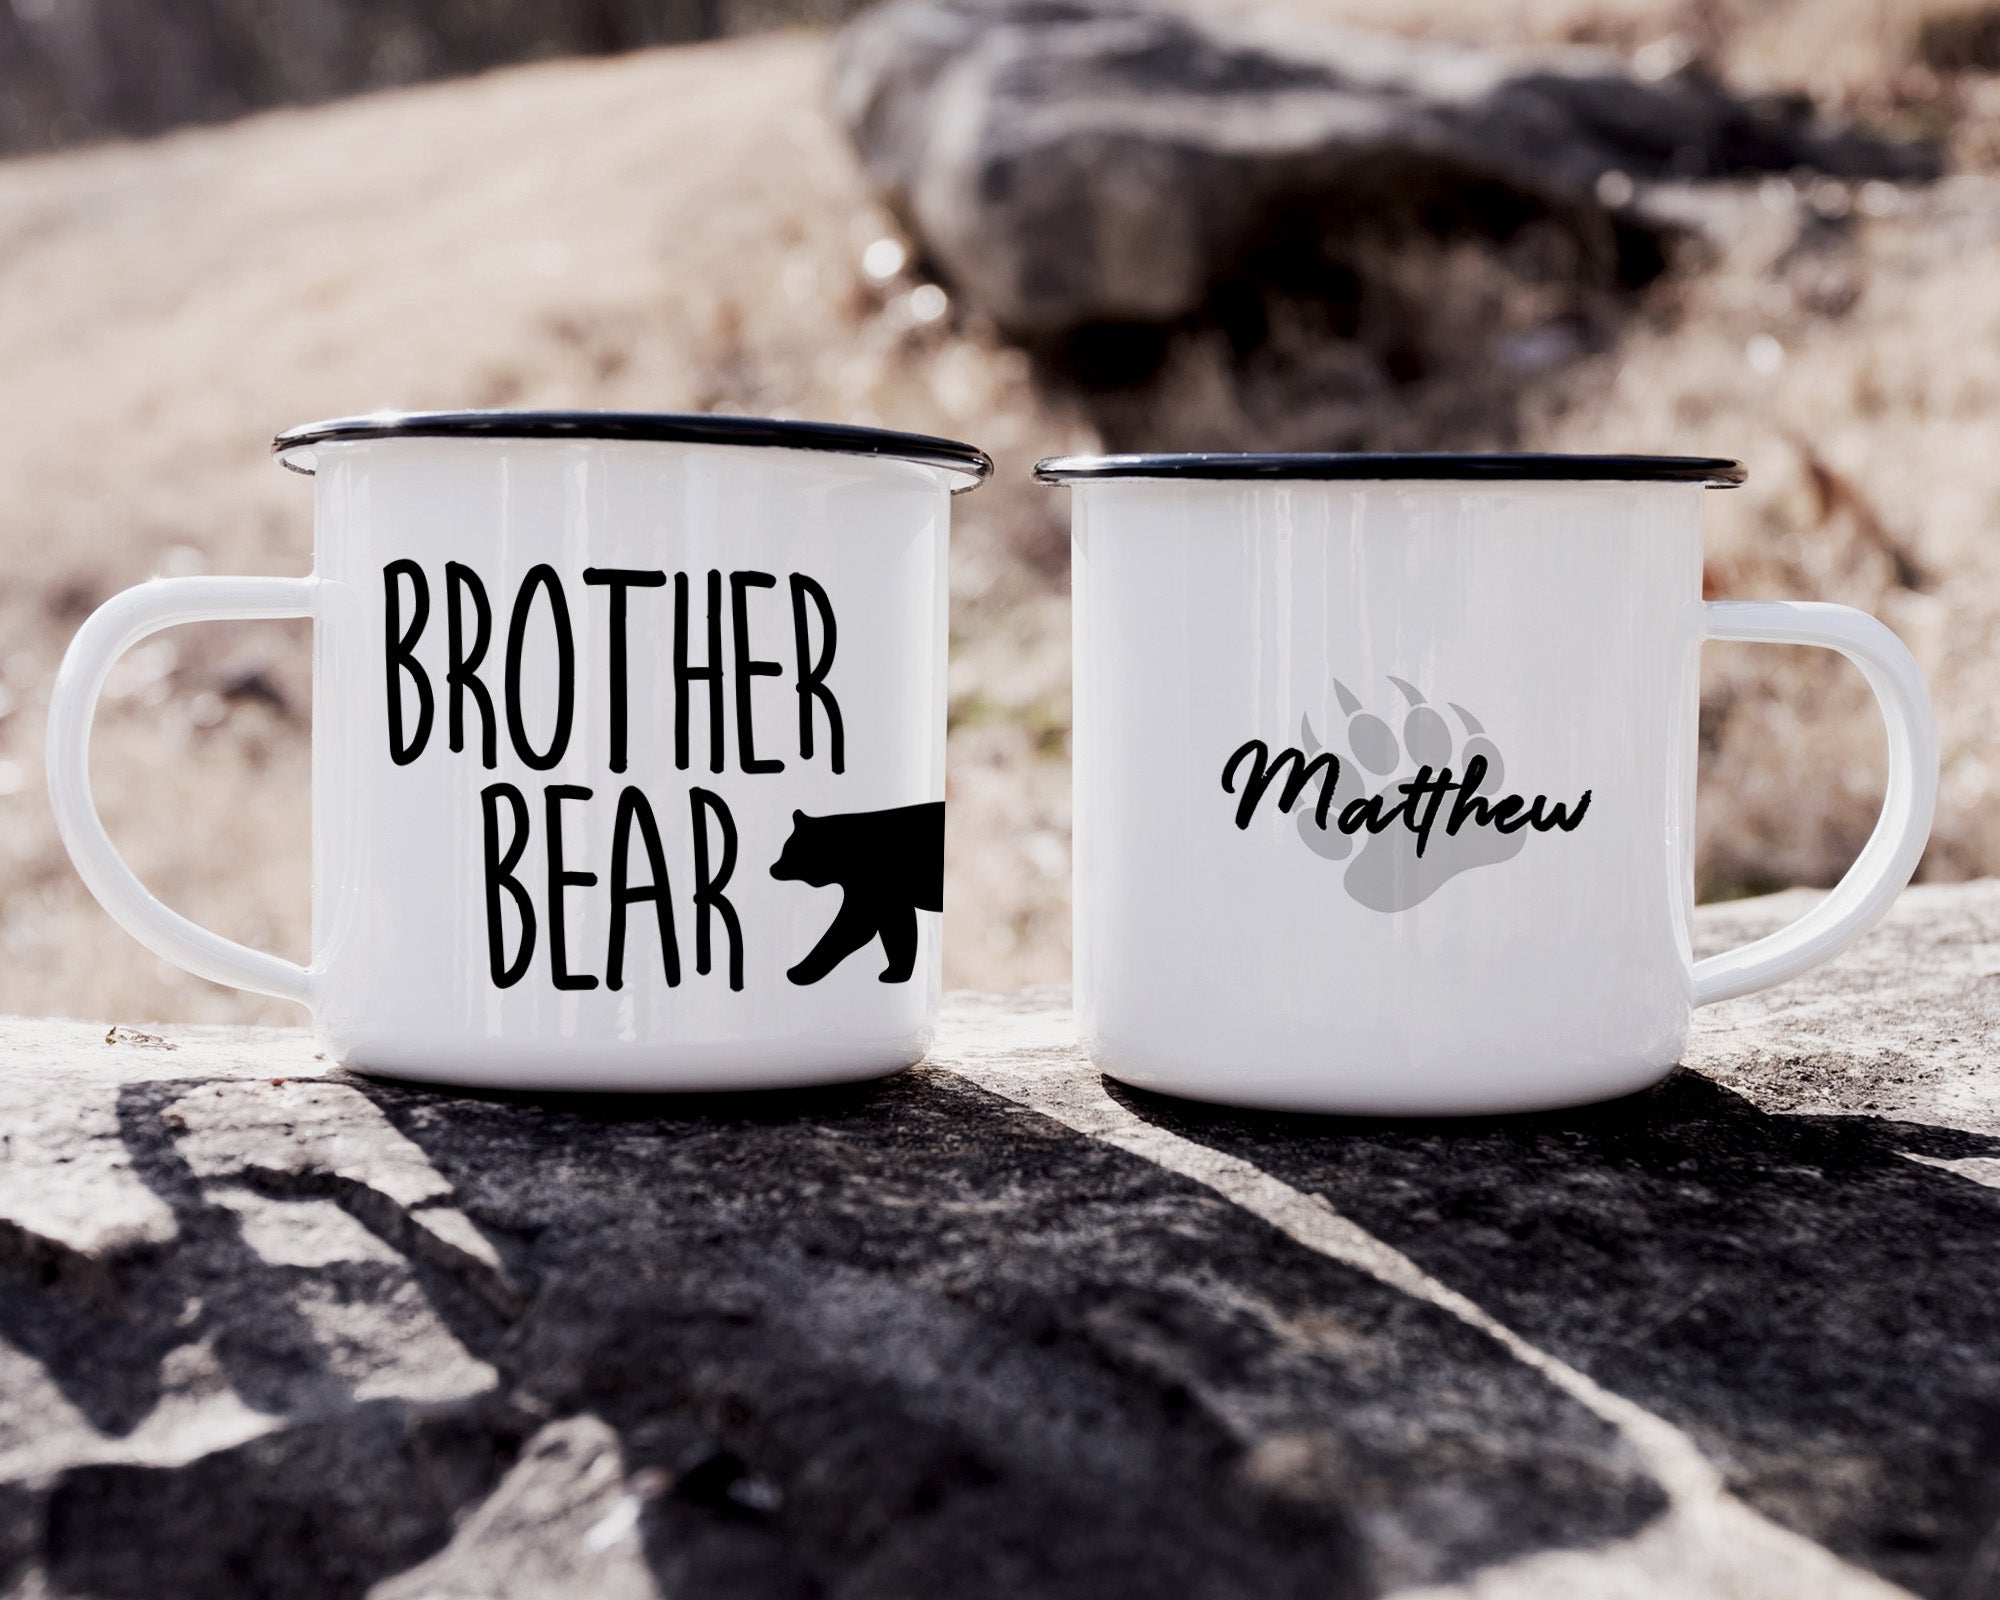 Set of 2 Papa Bear Mama Bear White & Black Ceramic Mug Cup Coffee